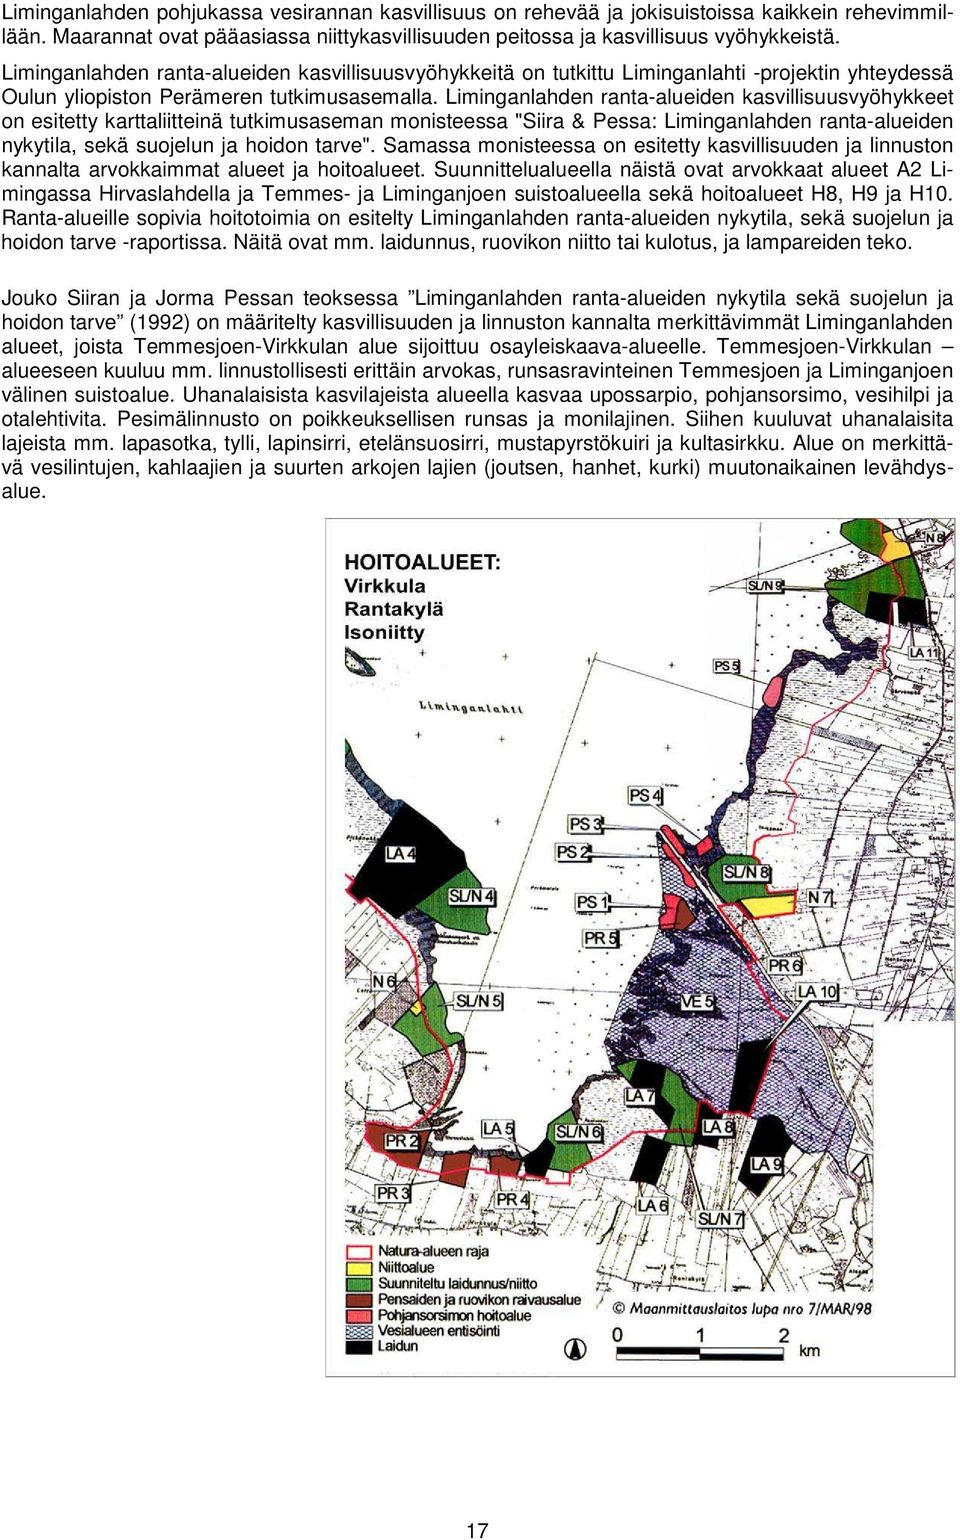 Liminganlahden ranta-alueiden kasvillisuusvyöhykkeet on esitetty karttaliitteinä tutkimusaseman monisteessa "Siira & Pessa: Liminganlahden ranta-alueiden nykytila, sekä suojelun ja hoidon tarve".